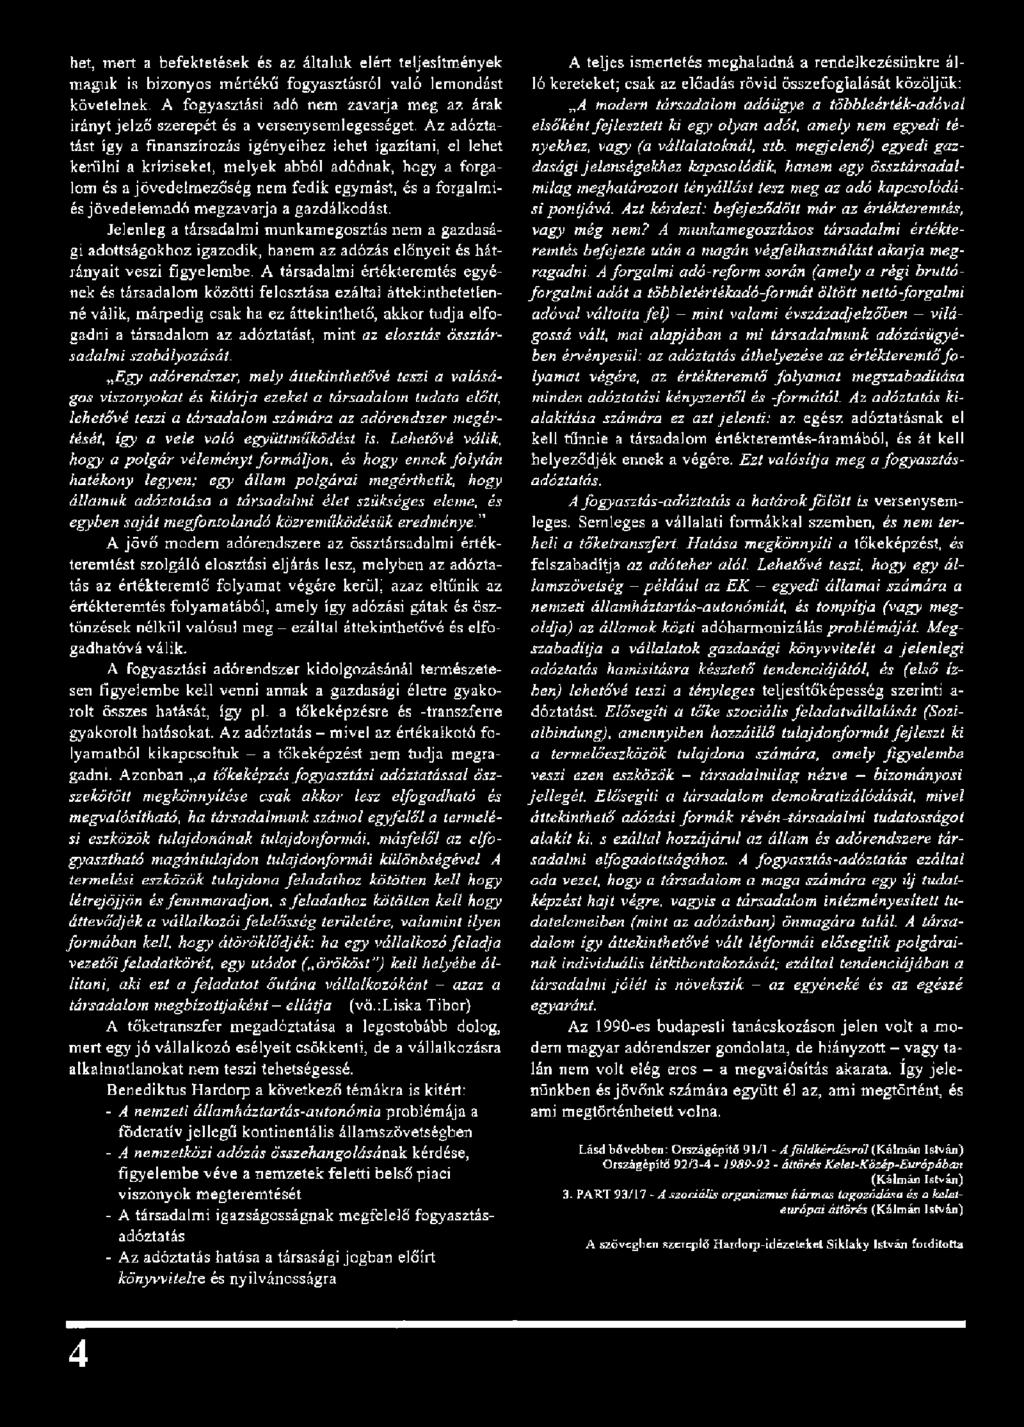 ORSZÁGÉPÍTŐ. Építészet Környezet Társadalom A Kós Károly Egyesülés  negyedéves folyóirata - PDF Ingyenes letöltés